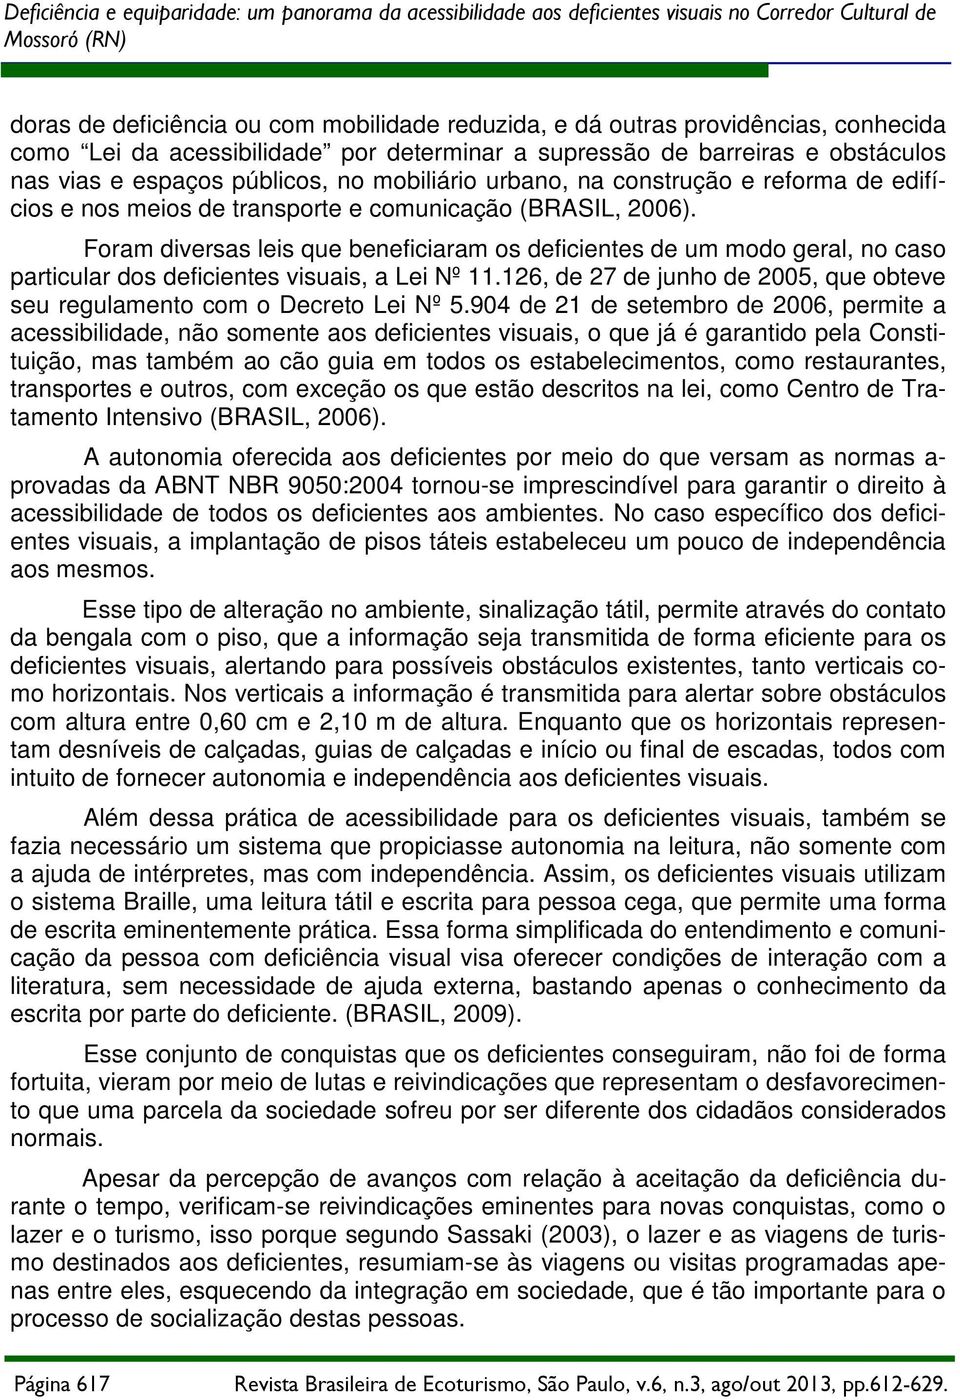 transporte e comunicação (BRASIL, 2006). Foram diversas leis que beneficiaram os deficientes de um modo geral, no caso particular dos deficientes visuais, a Lei Nº 11.